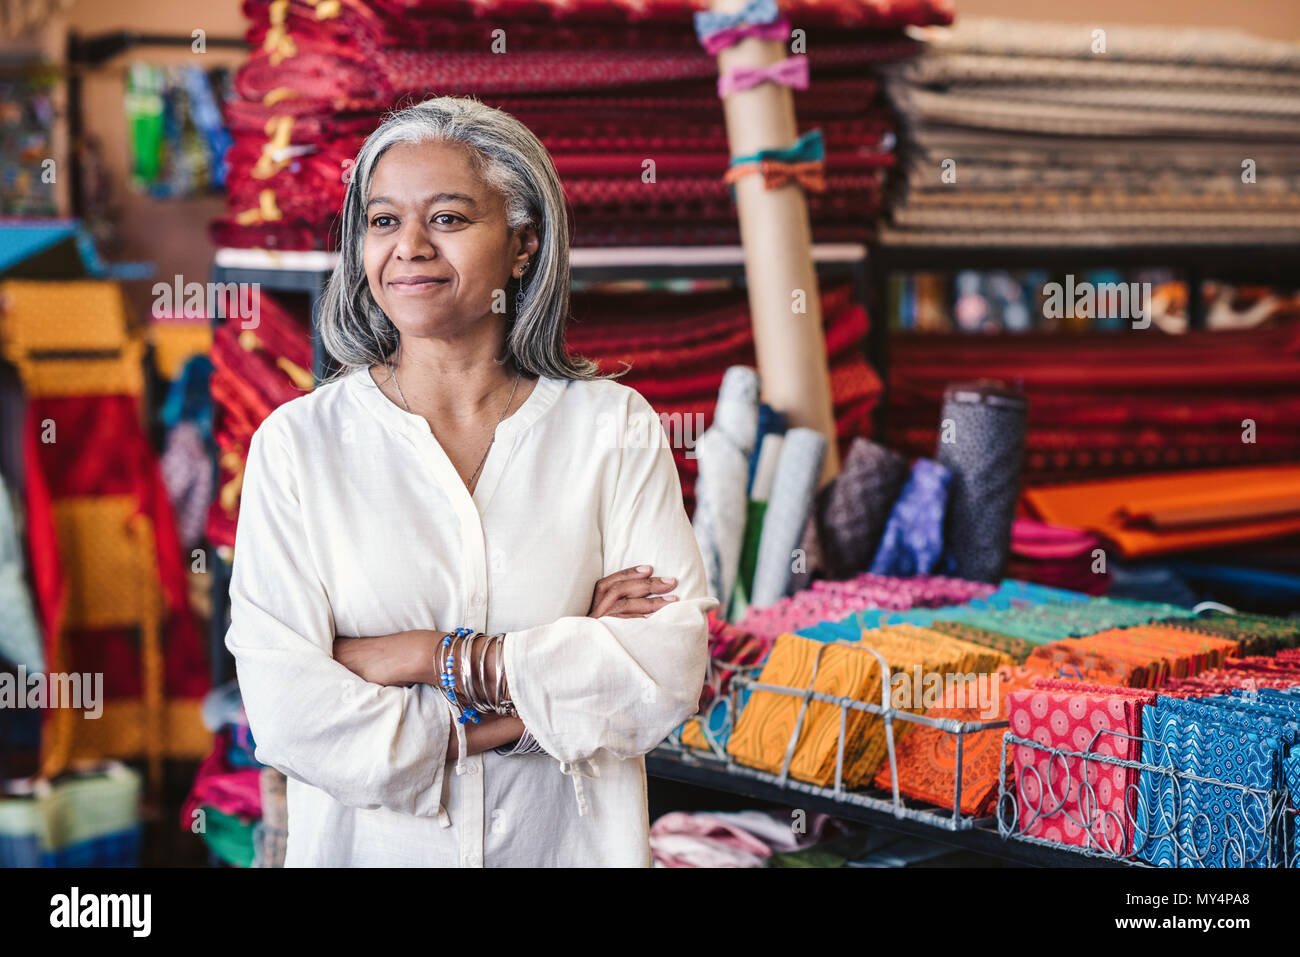 Lächelnd reife Stoff shop besitzer stehen mit ihren Armen durch Regale voll von bunten Textilien und coths gekreuzt umgeben Stockfoto